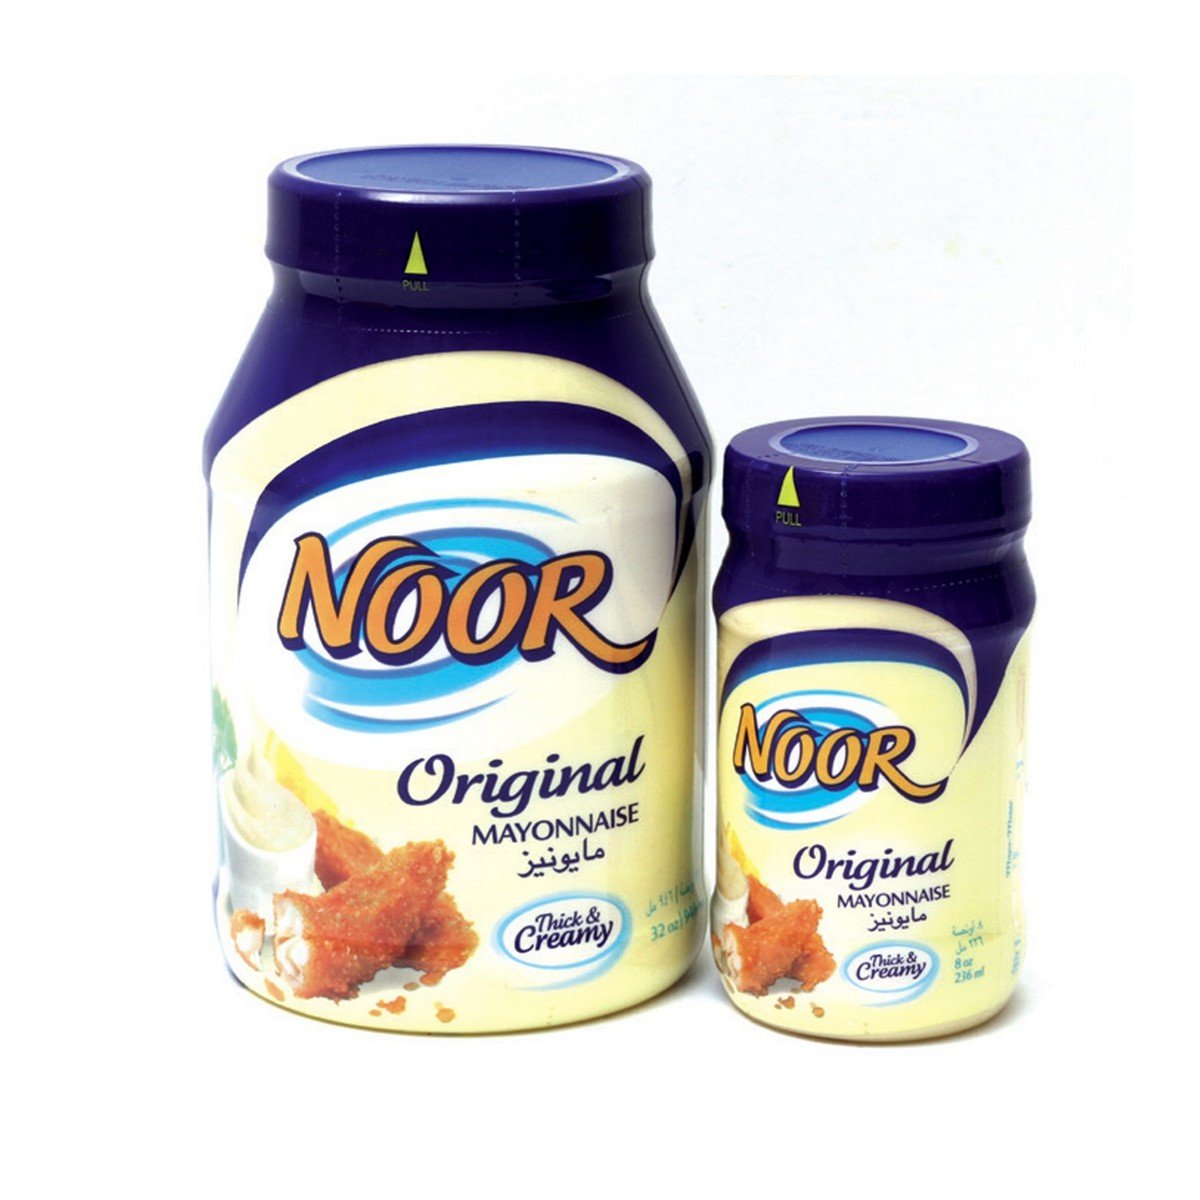 Noor Mayonnaise 944 ml + 236 ml